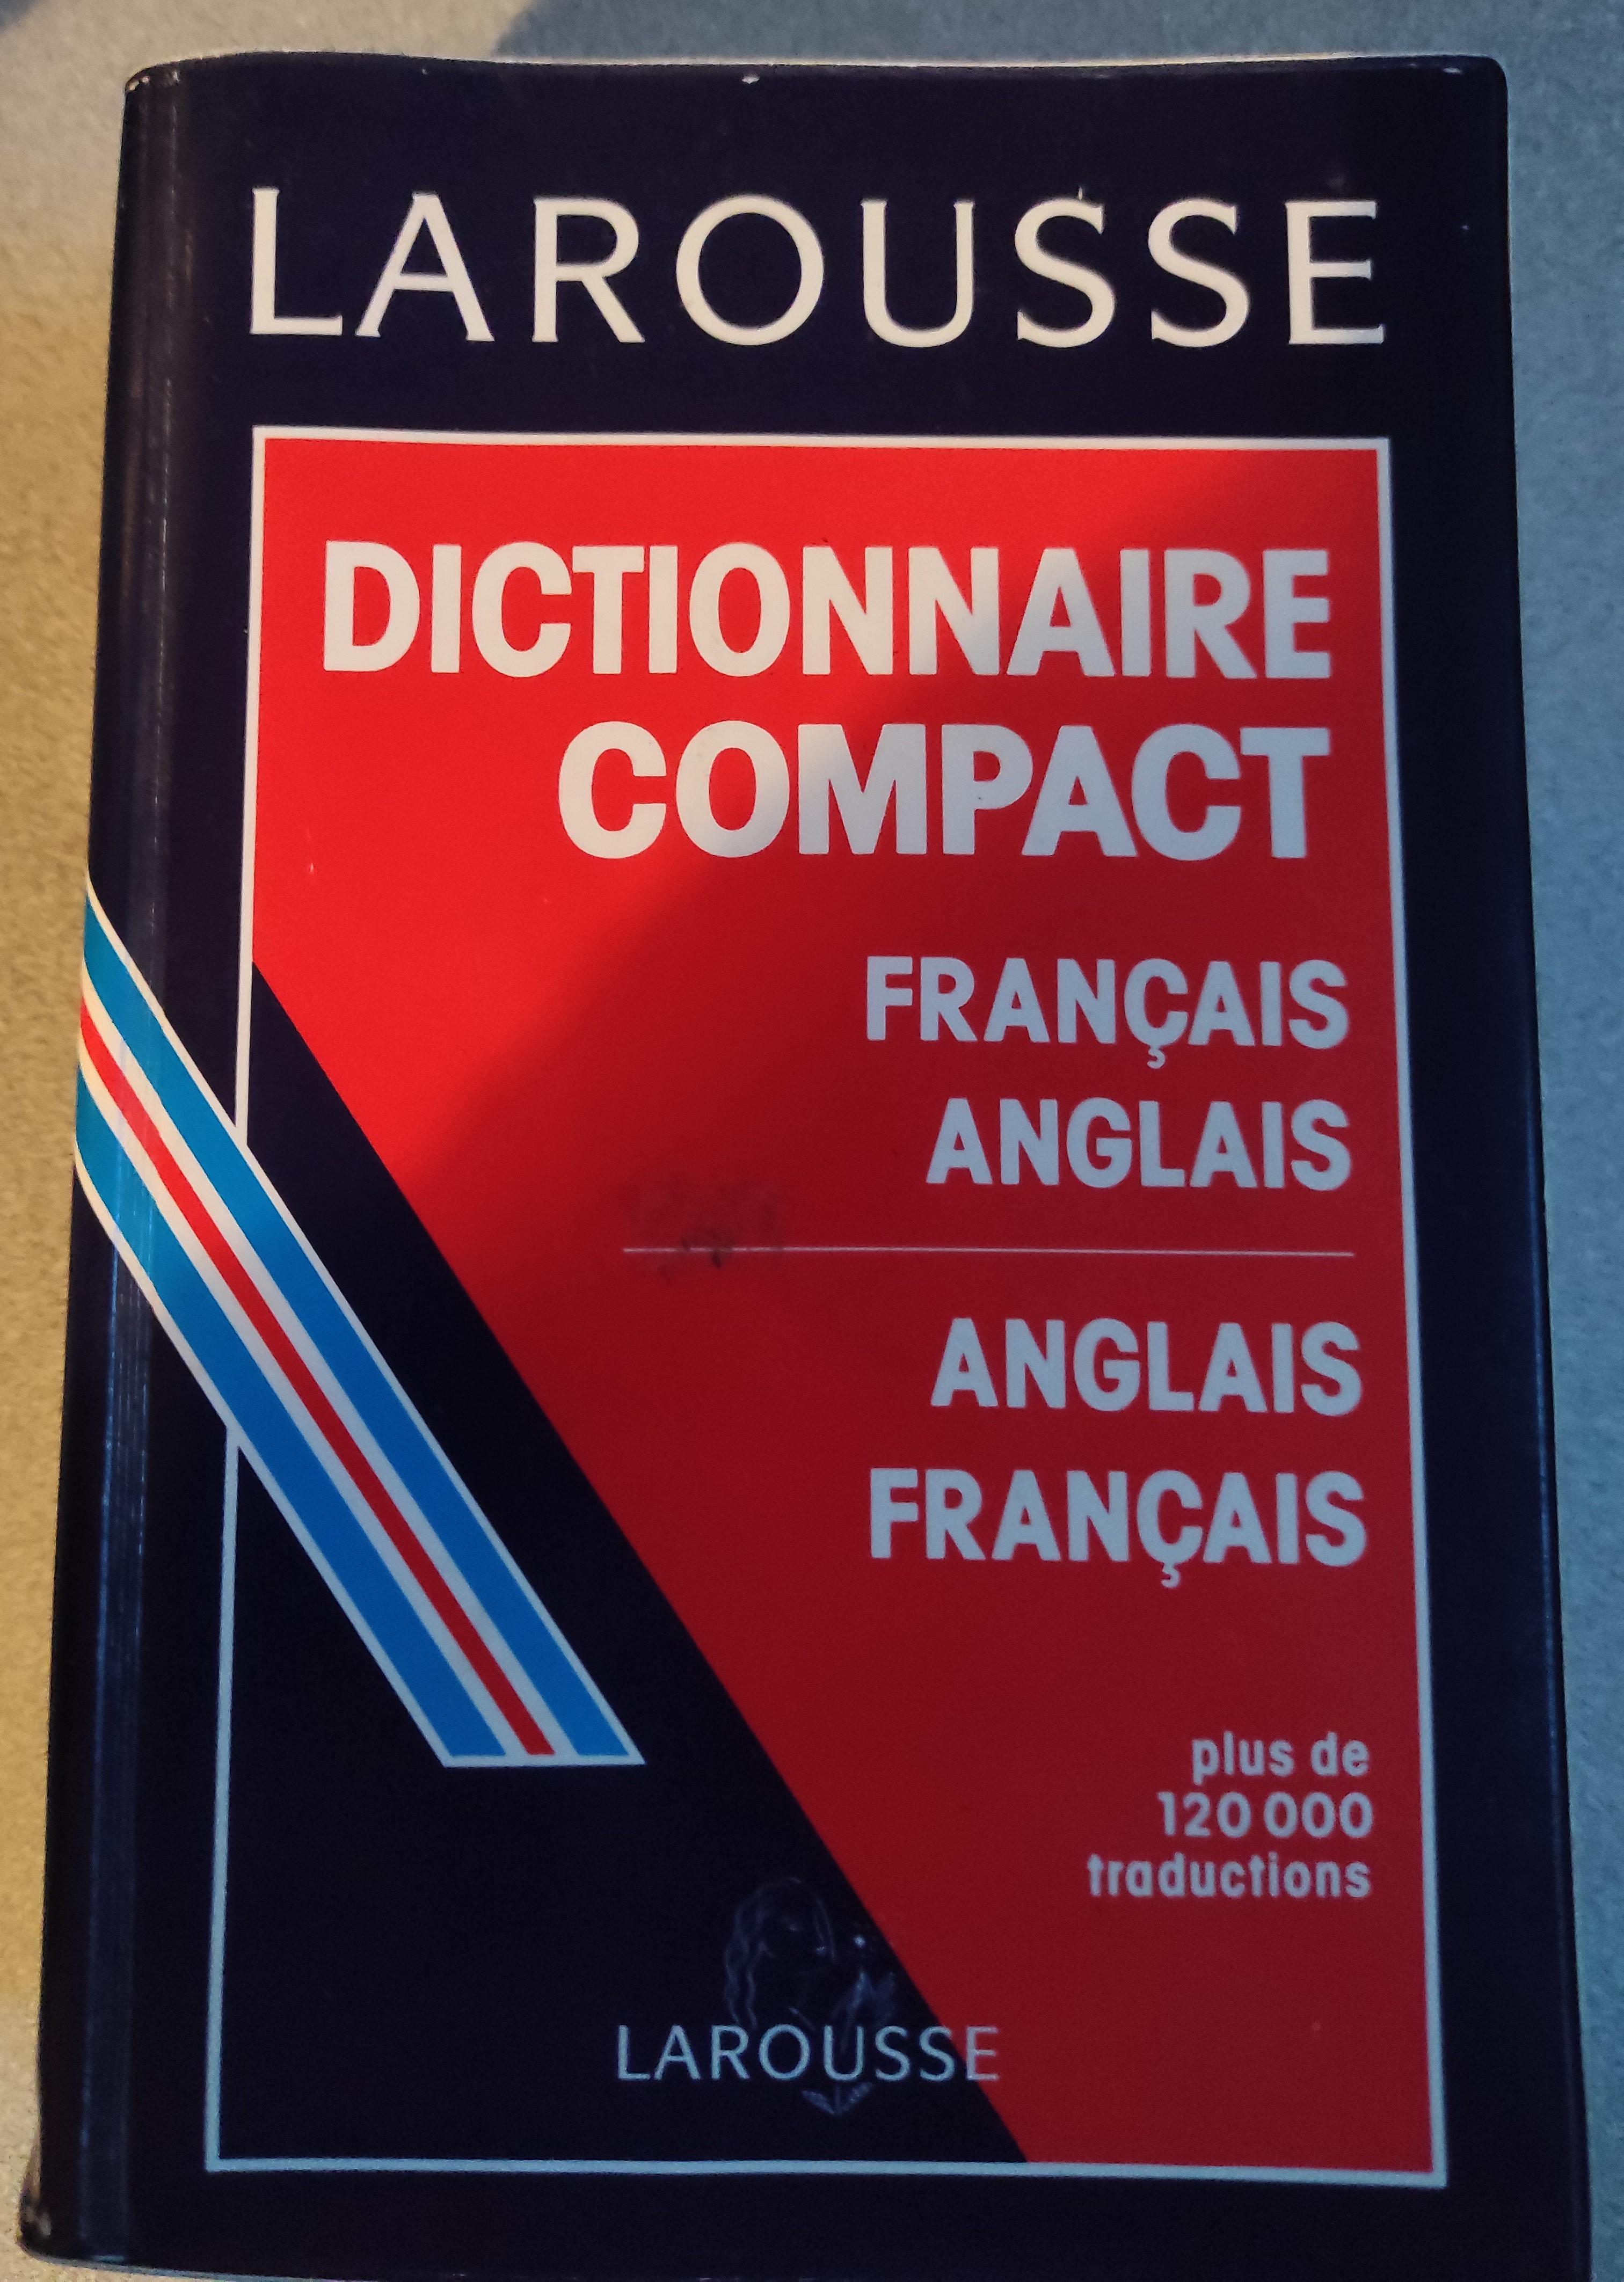 troc de troc dictionnaire compact francais anglais image 0